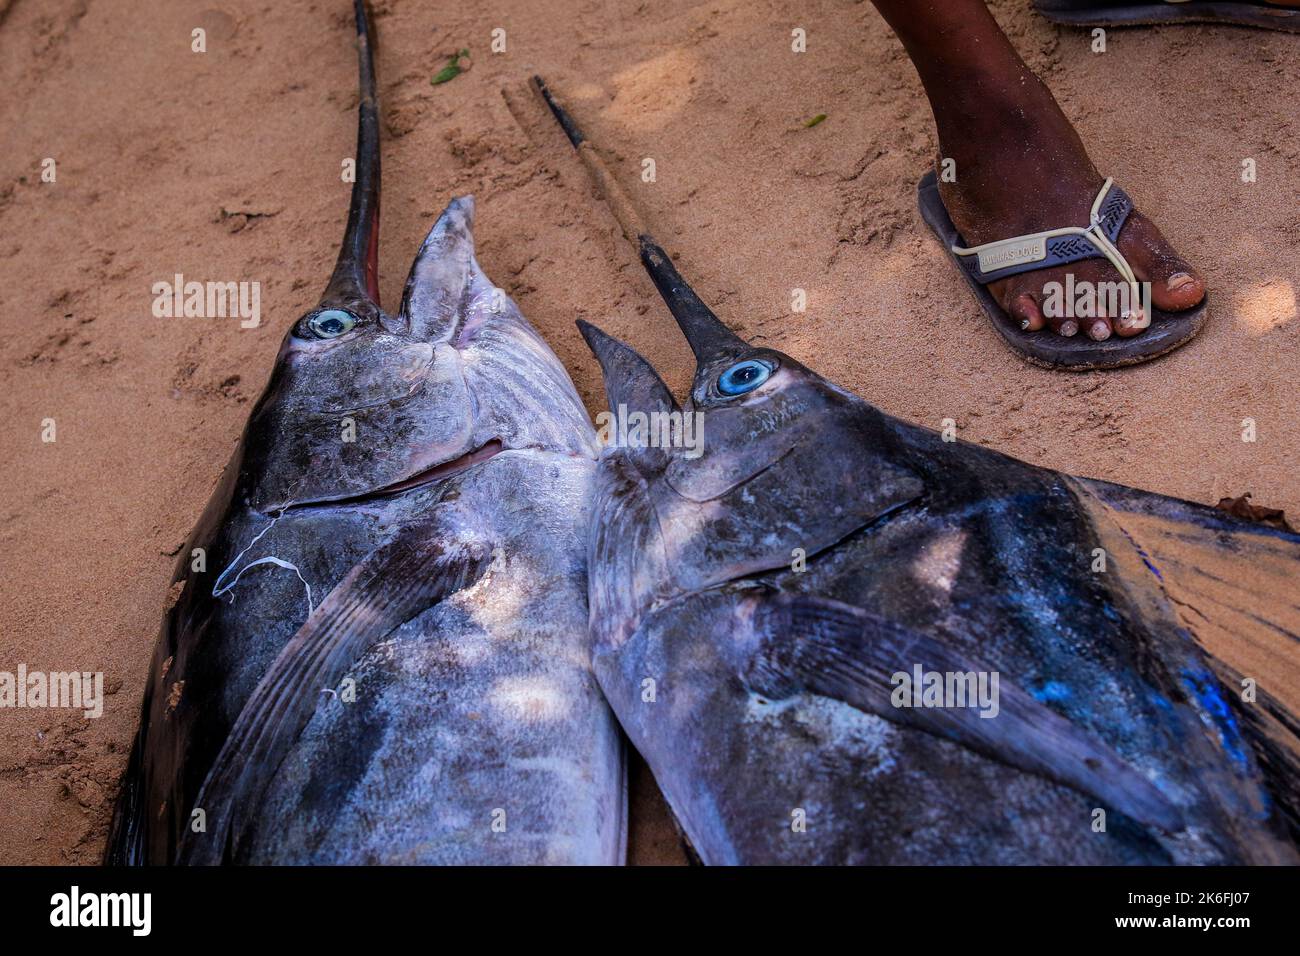 Uomo africano locale che vende pesce fresco Marlin sulla strada del Ghana, Africa occidentale Foto Stock